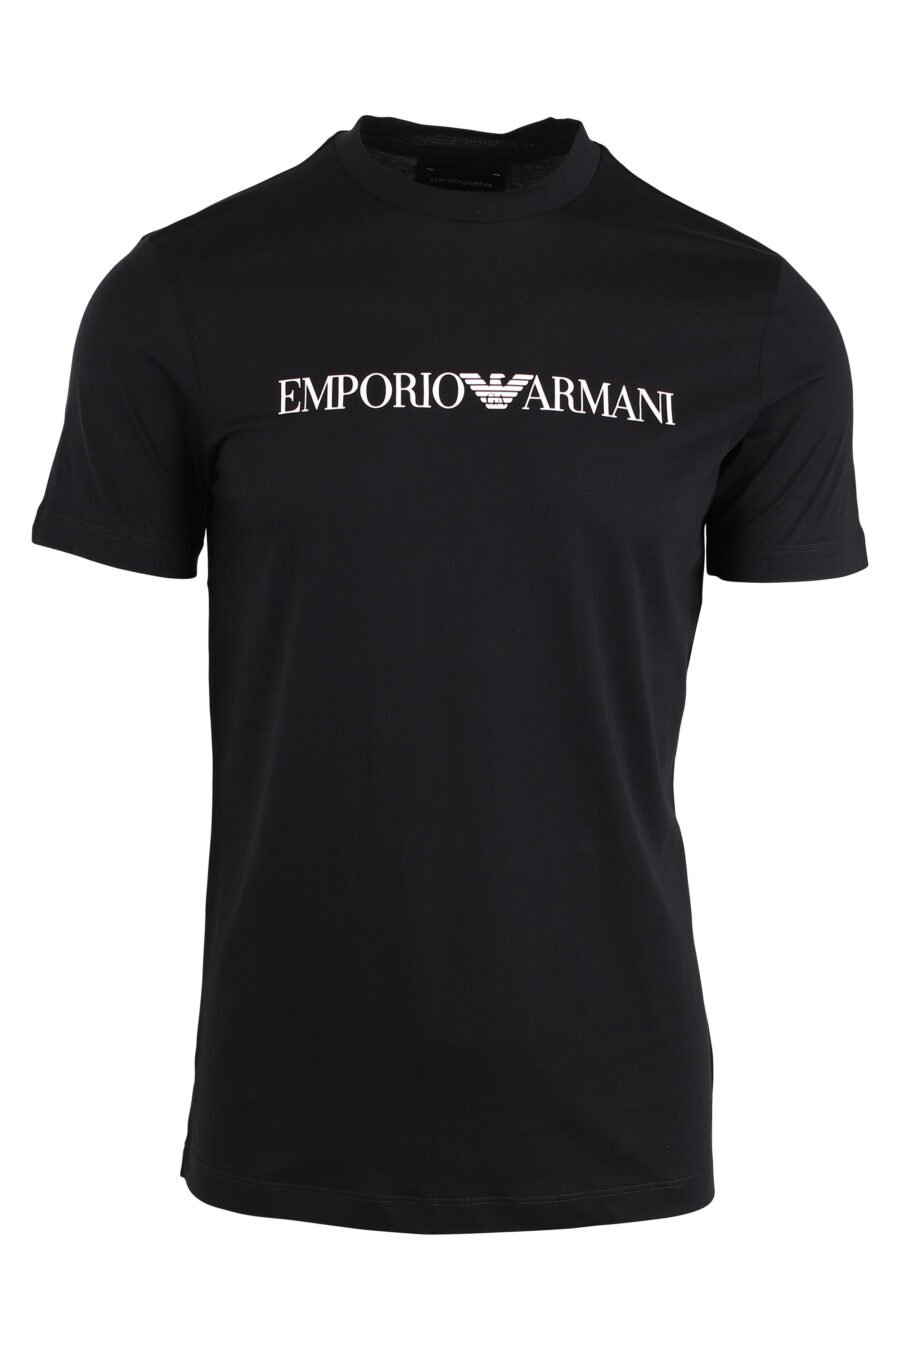 T-shirt preta com letras brancas maxilogo - IMG 4250